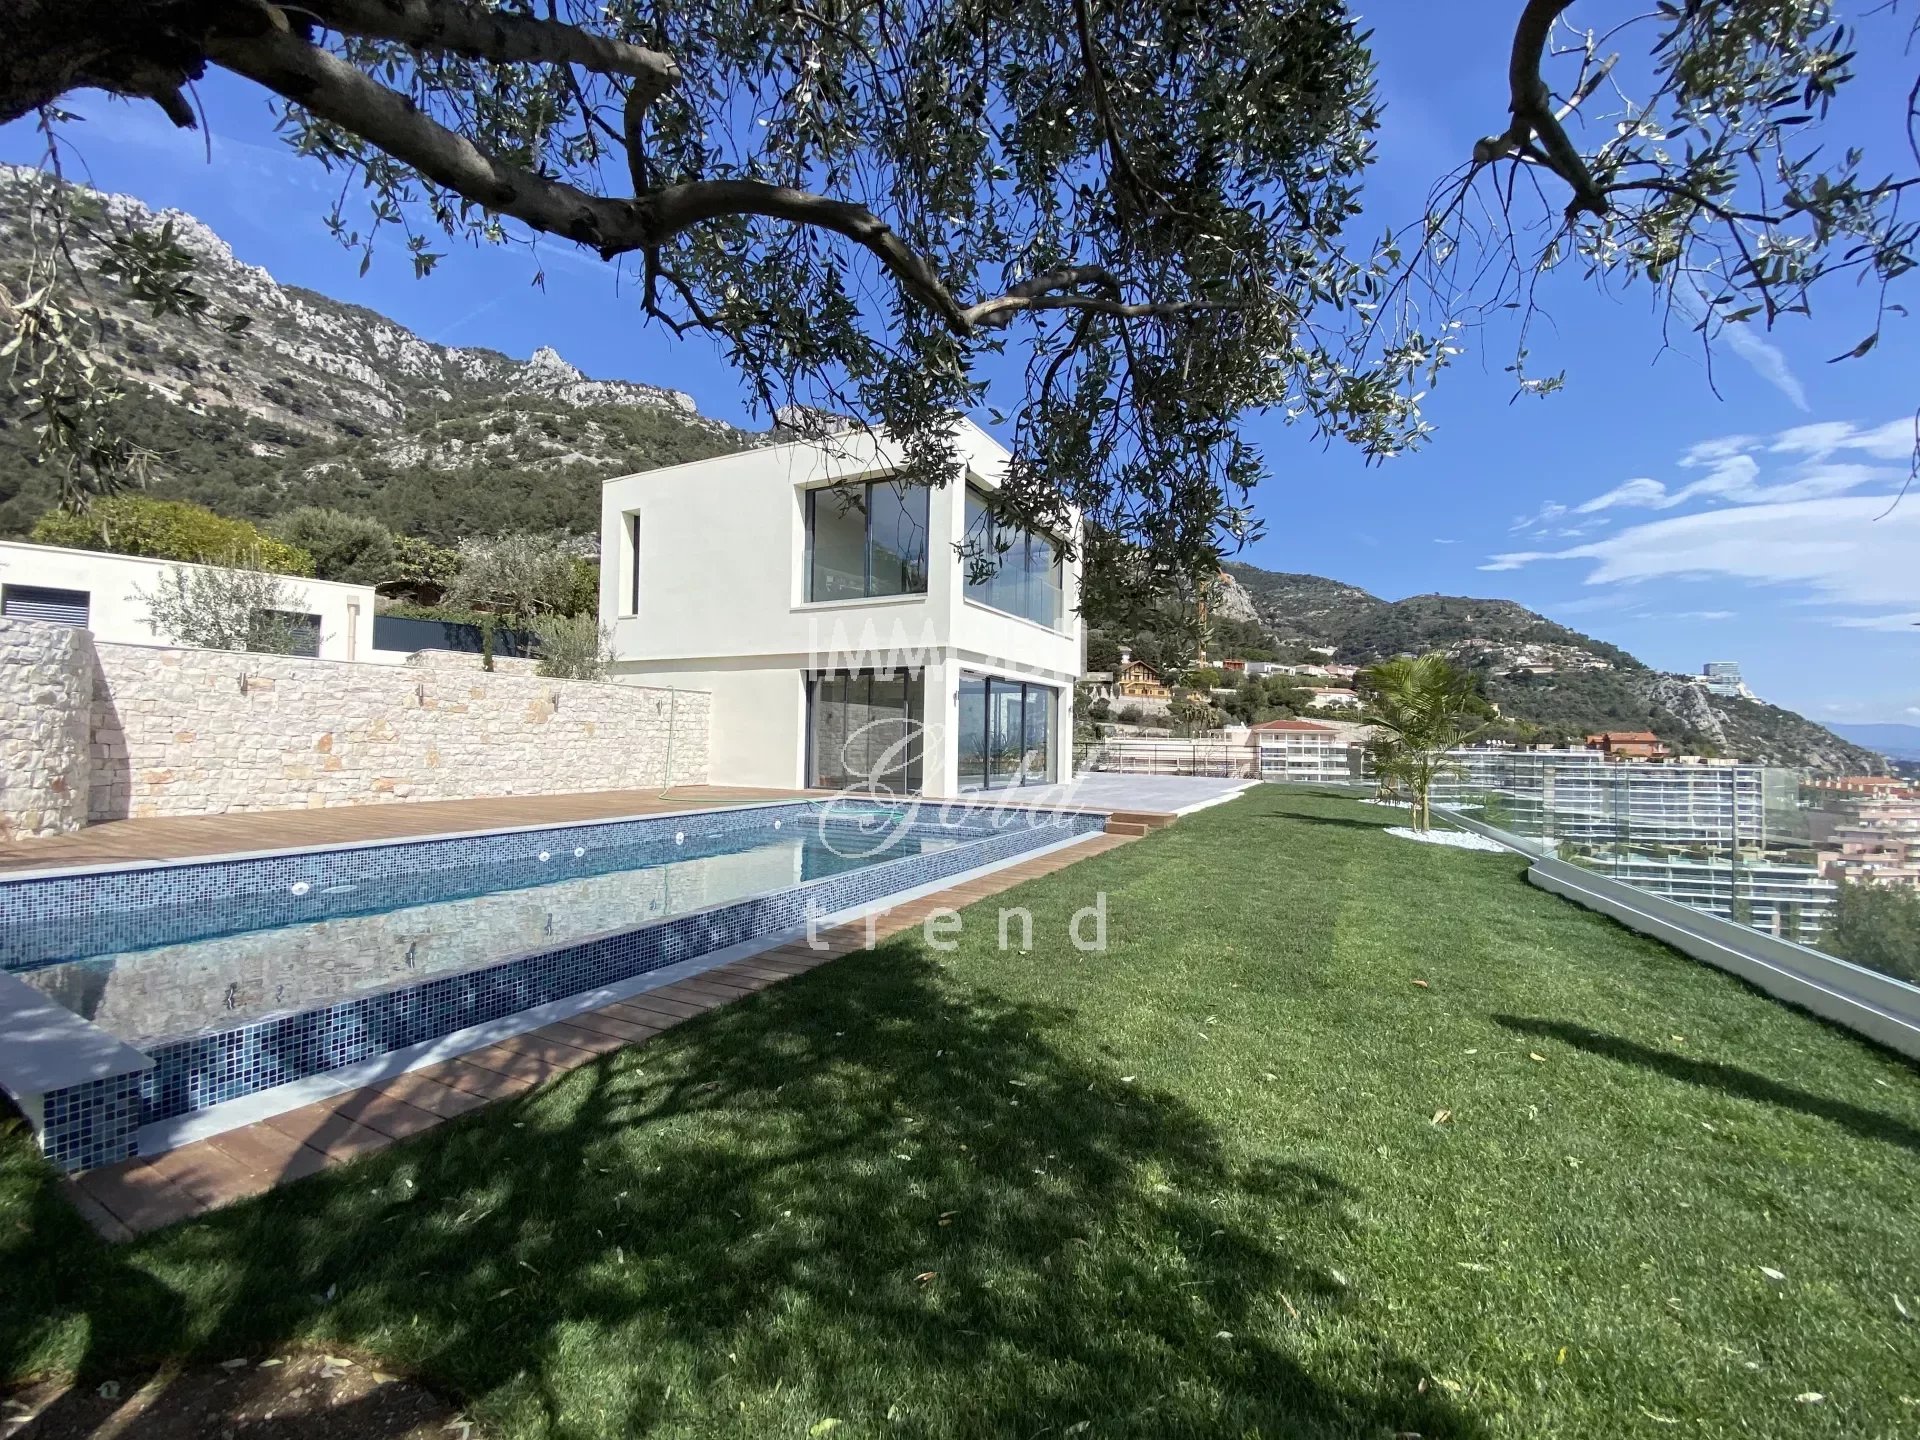 Immobiliare Beausoleil - In vendita, splendida villa con piscina e vista mare panoramica, limitrofa a Monaco